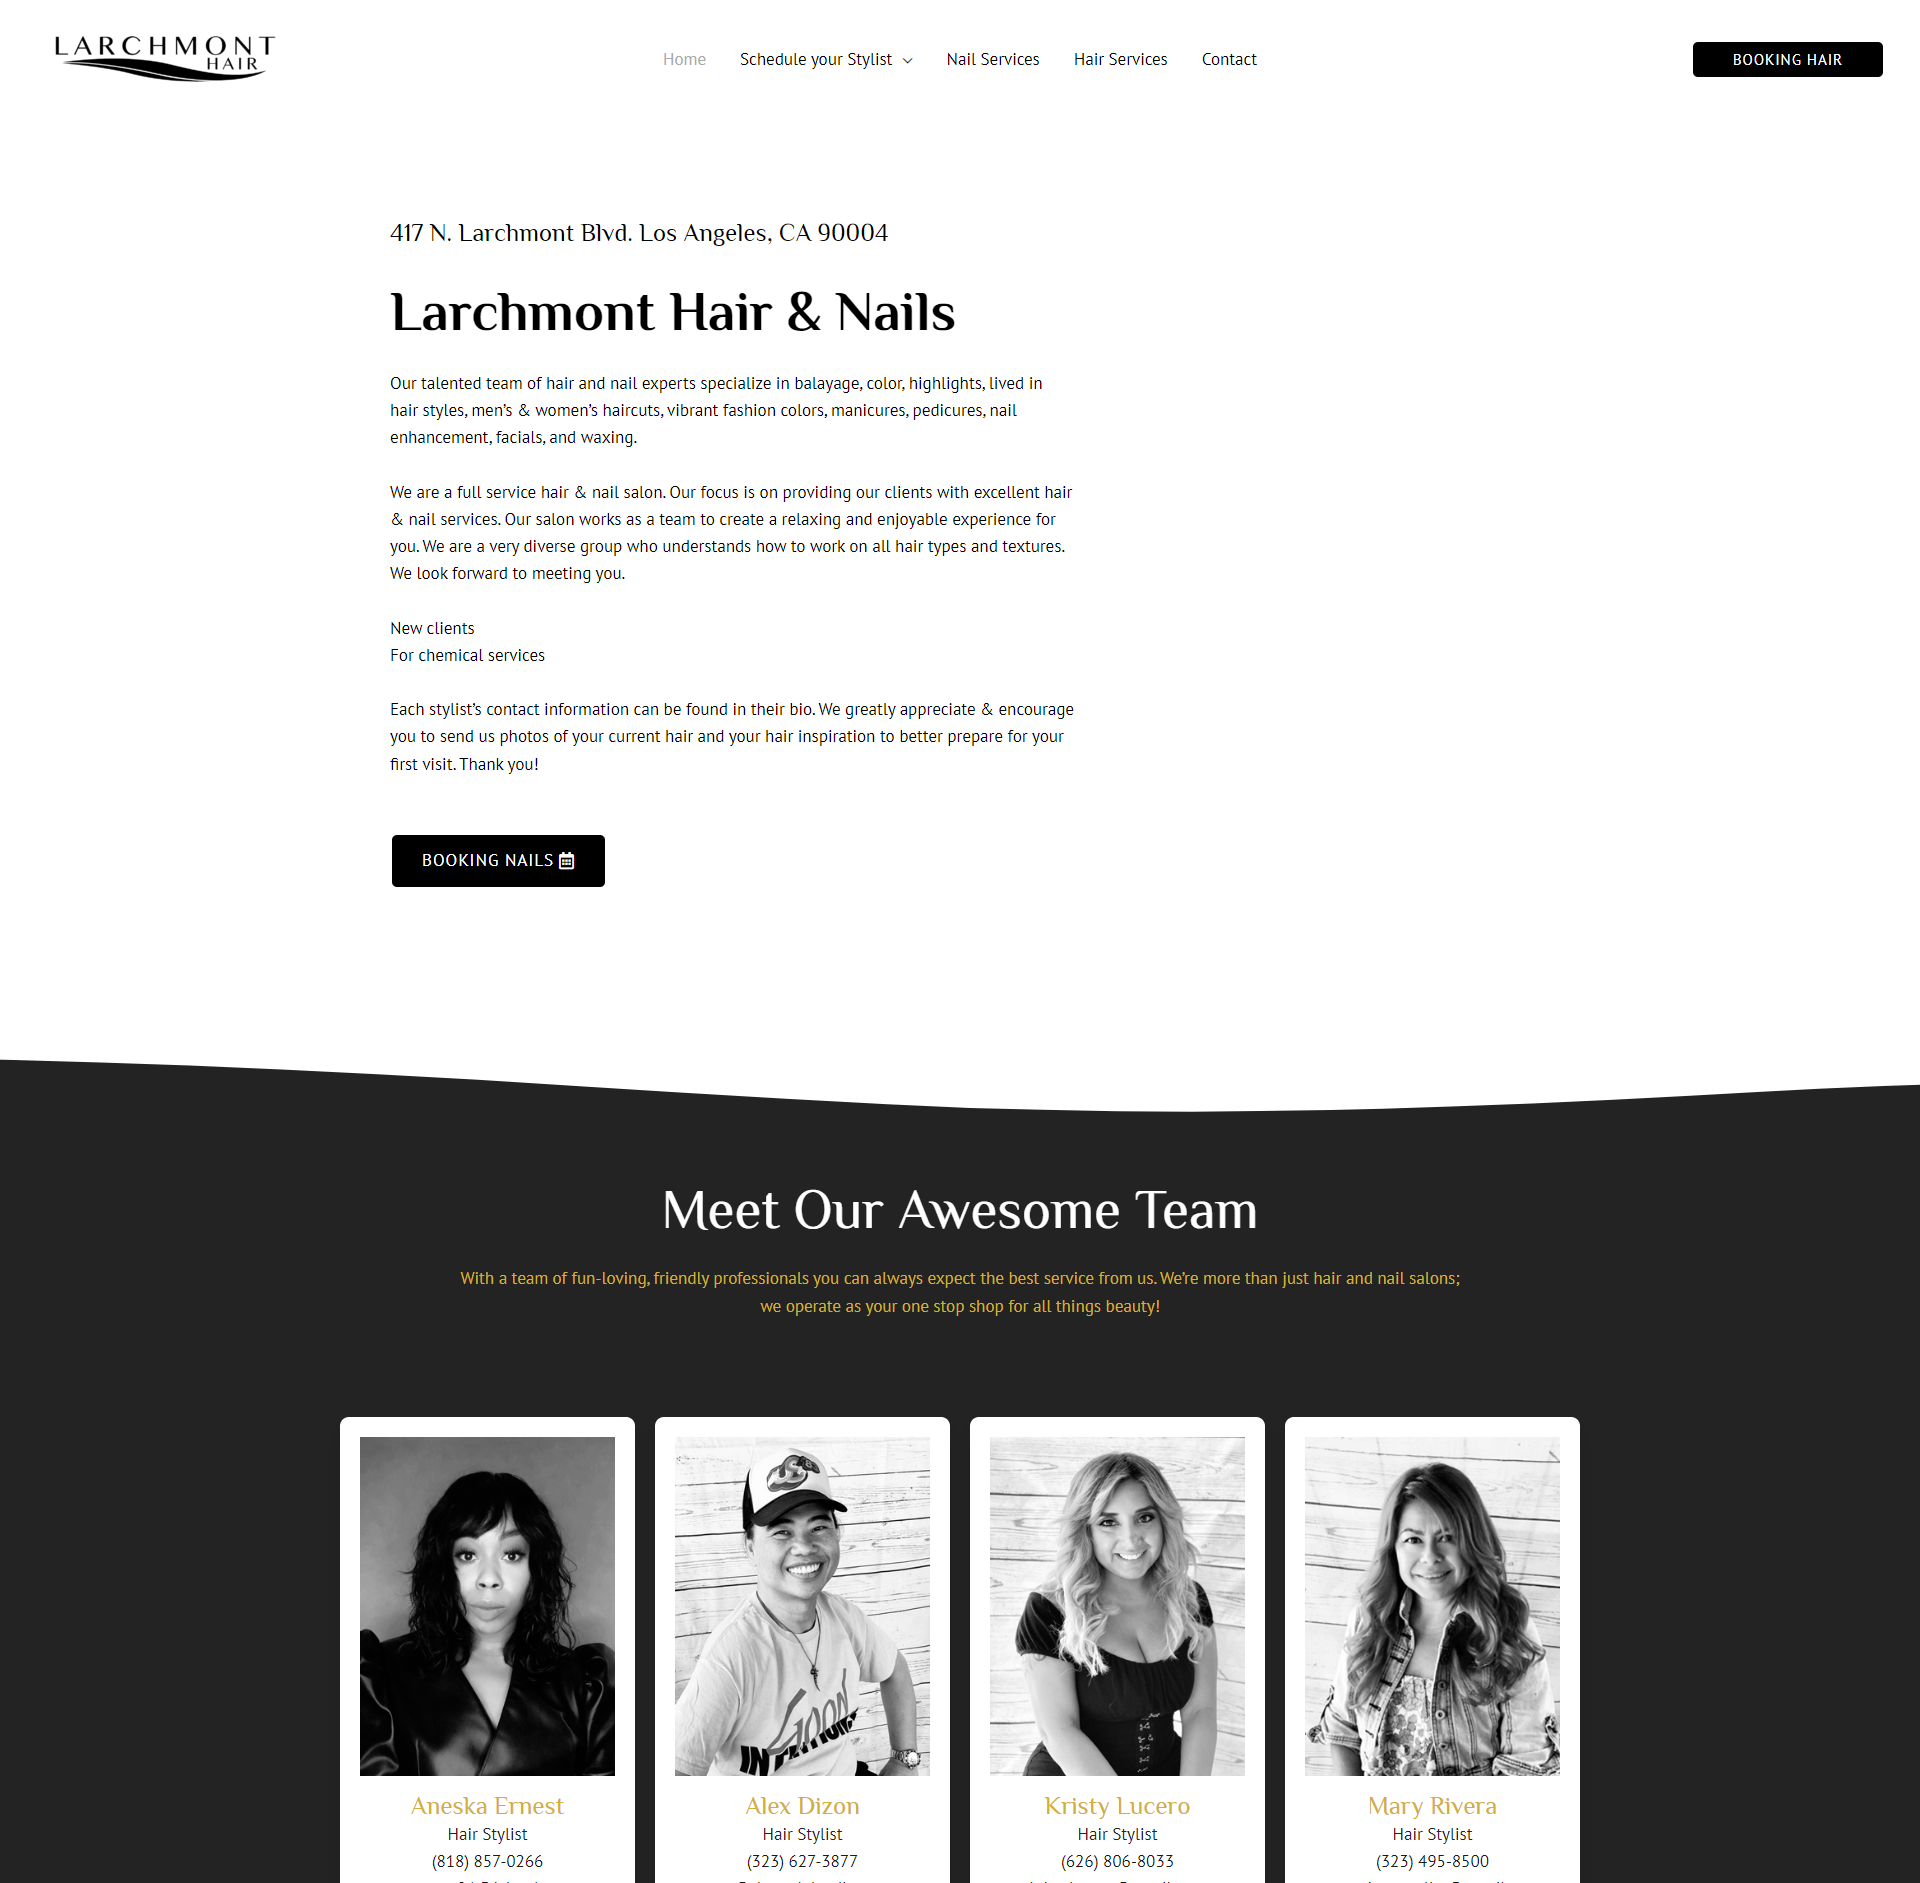 Larchmont Hair & Nails